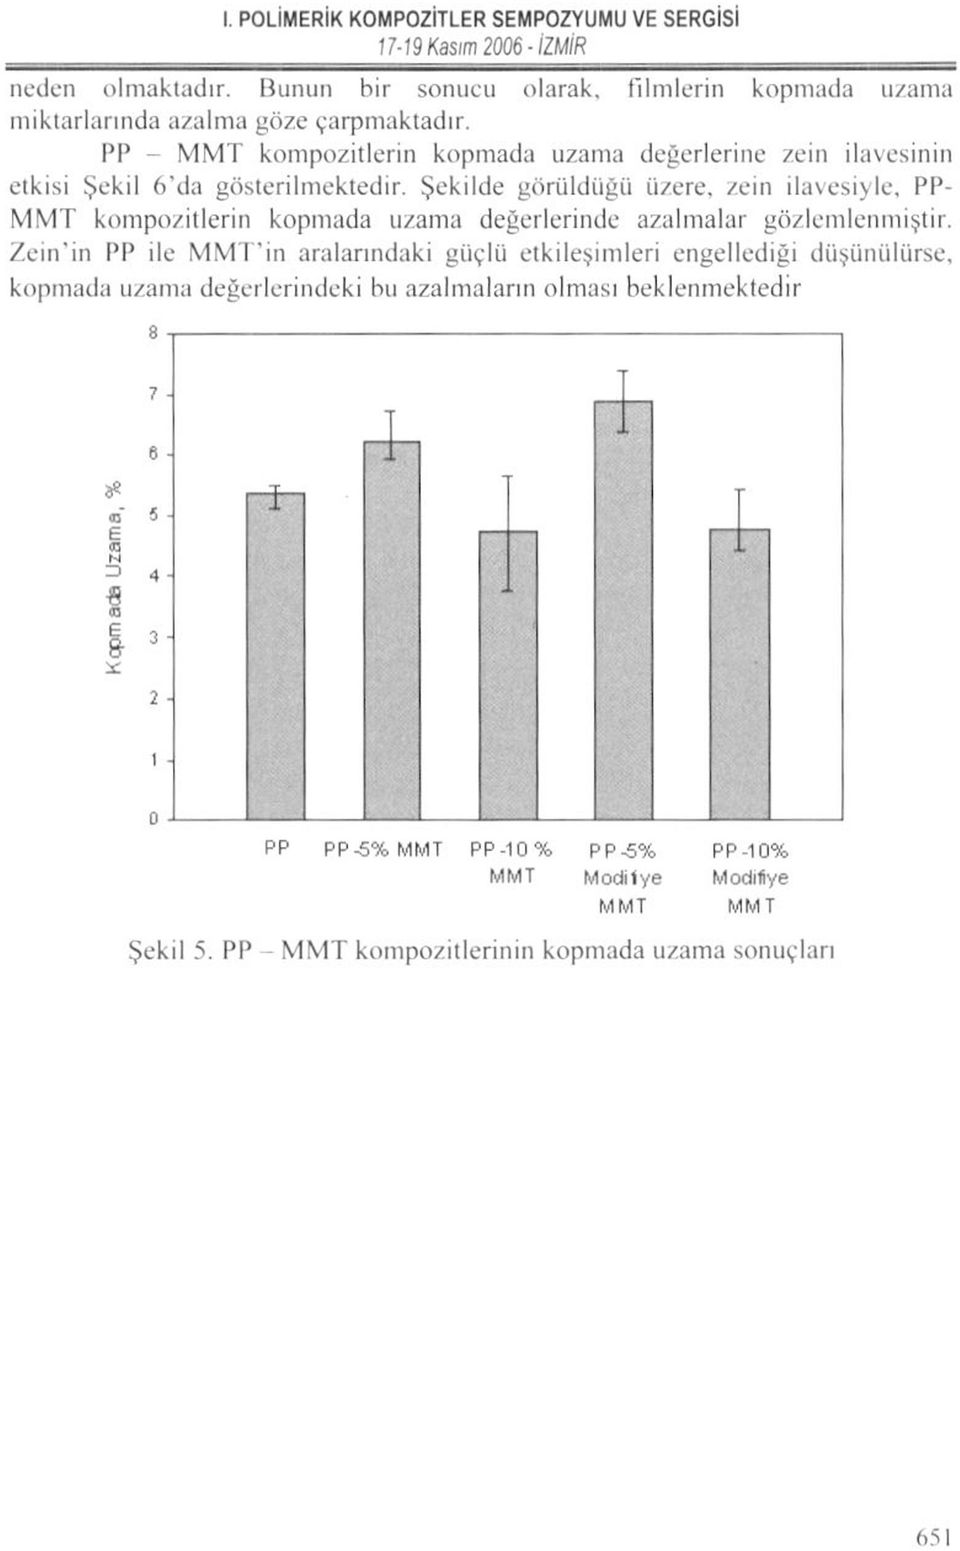 Şekilde görüldüğü üzere, zein ilavesiyle, PP- MMT kompozitlerin kopmada uzama değerlerinde azalmalar gözlemlenmiştir.